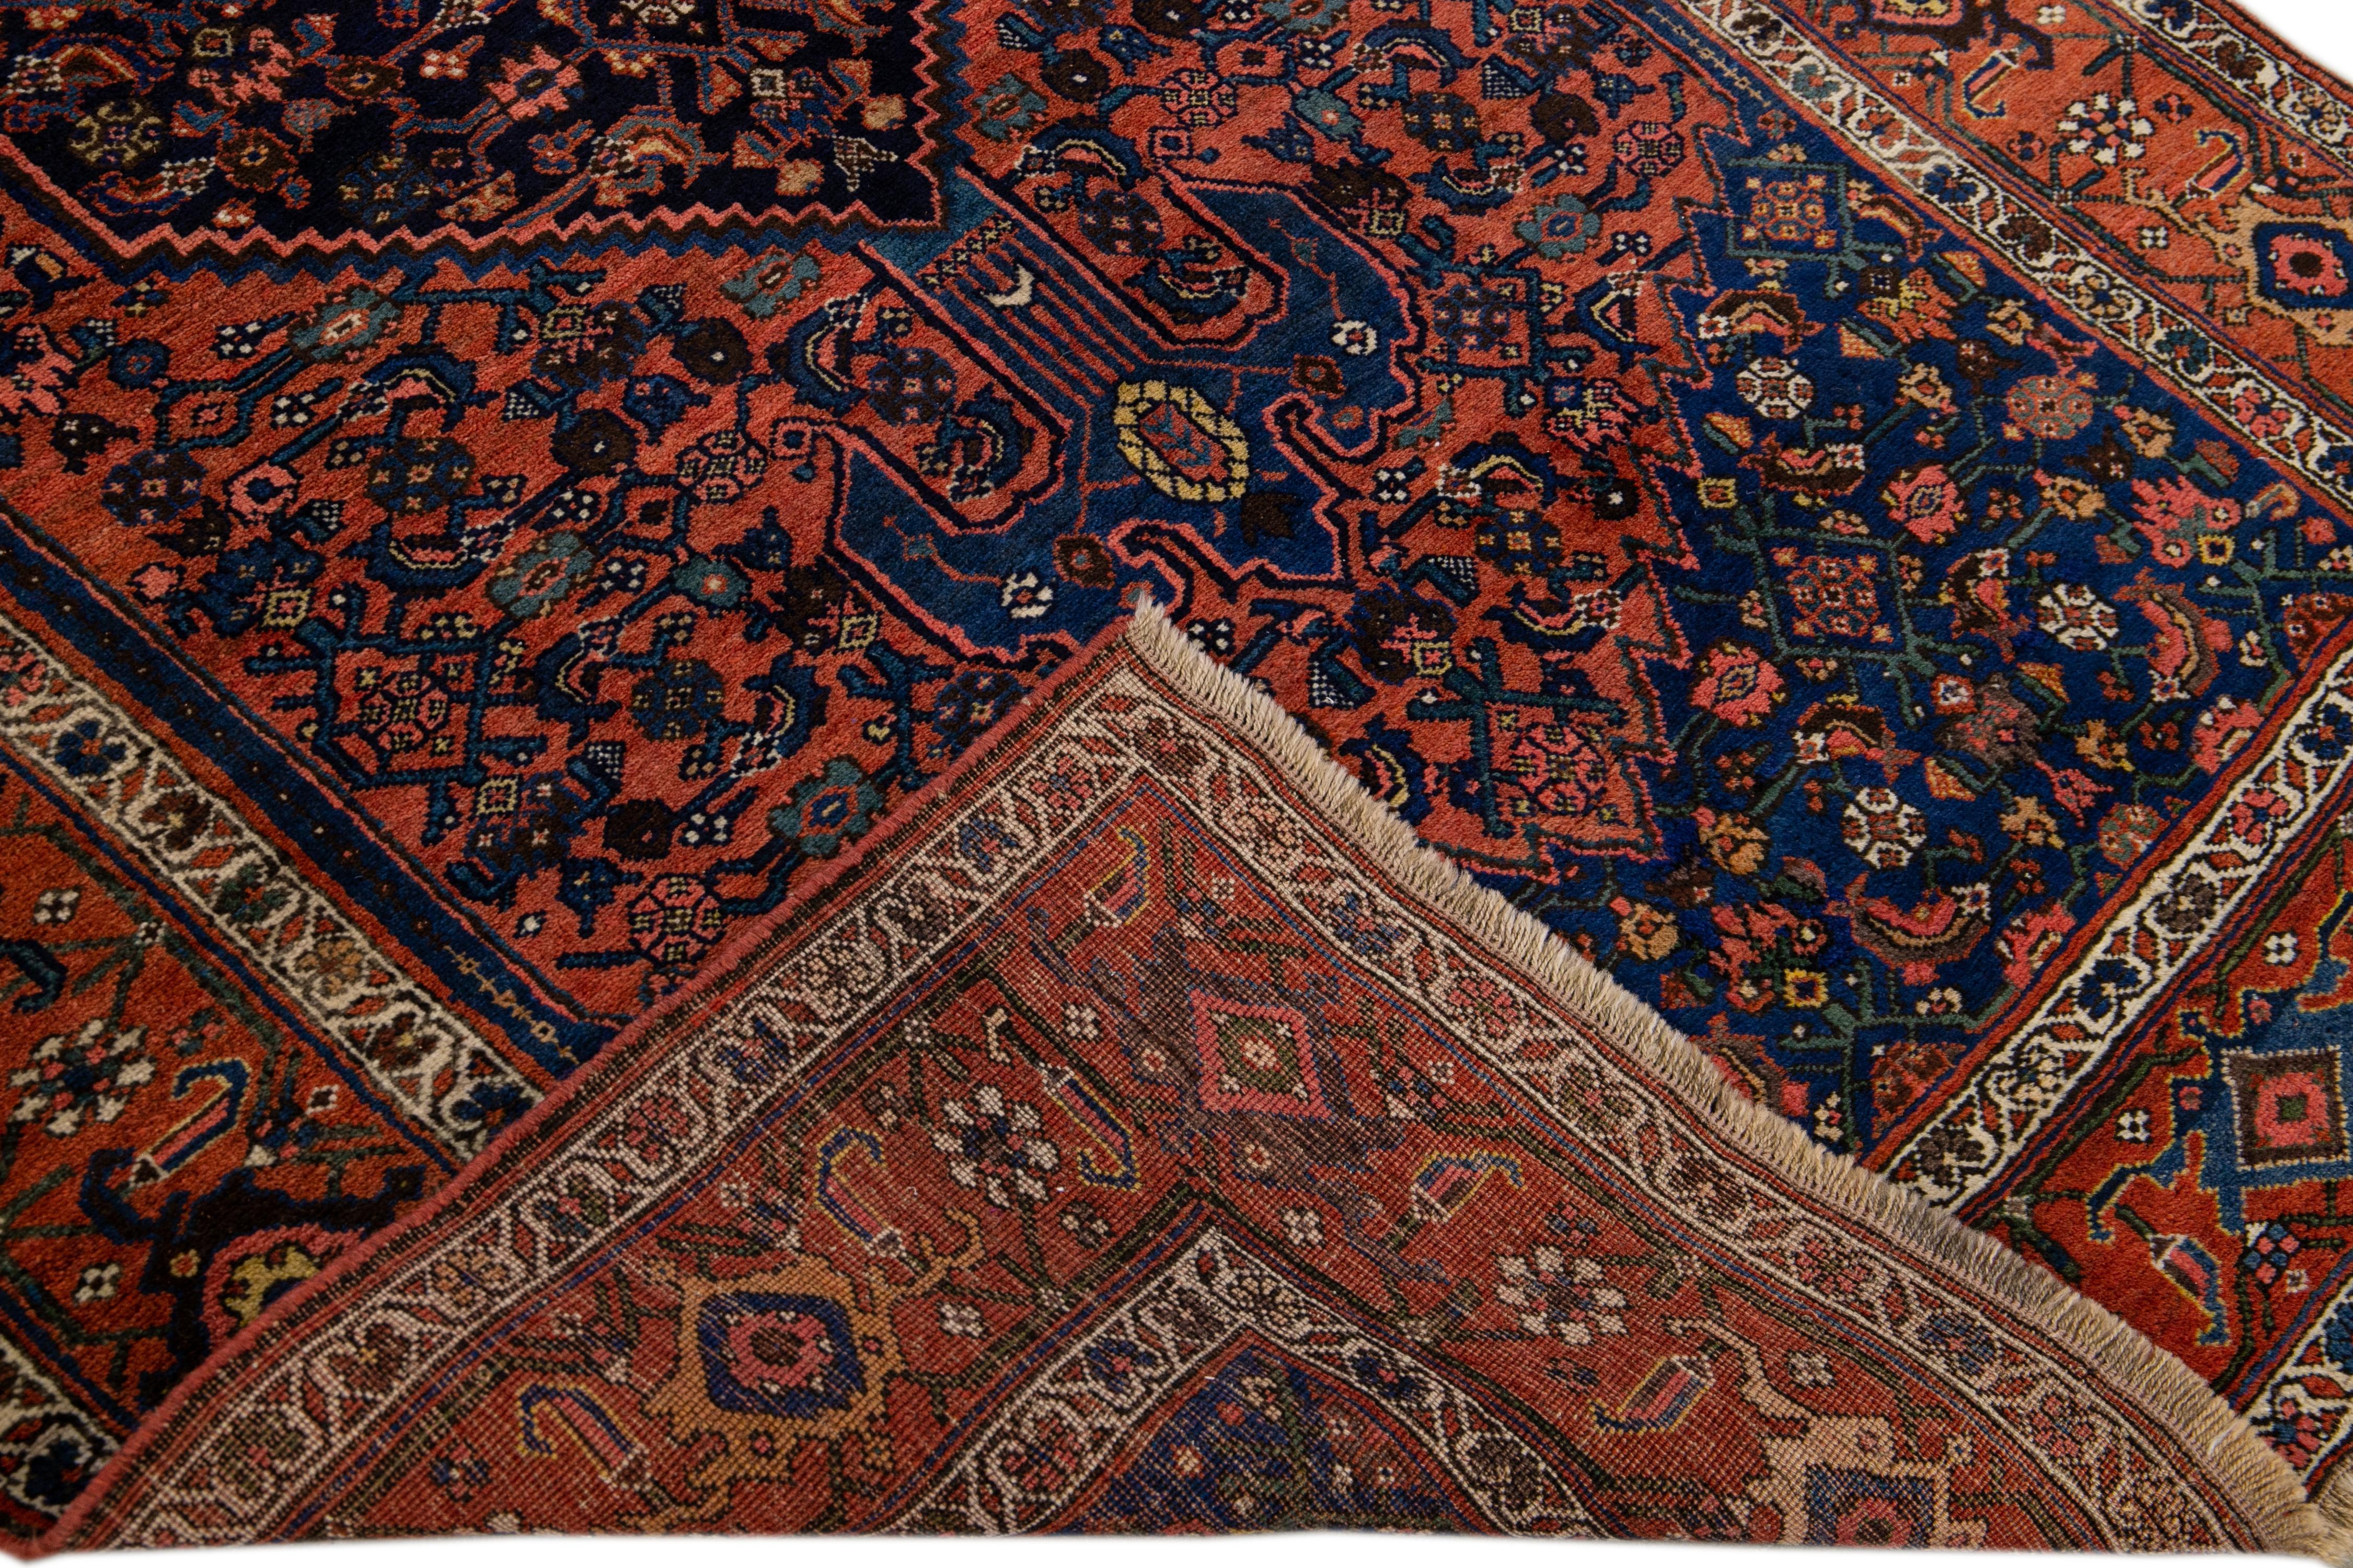 Magnifique tapis persan vintage Bidjar en laine nouée à la main avec un champ rouille et bleu. Cette pièce présente un motif floral médaillon aux accents multicolores.

Ce tapis mesure 4'8